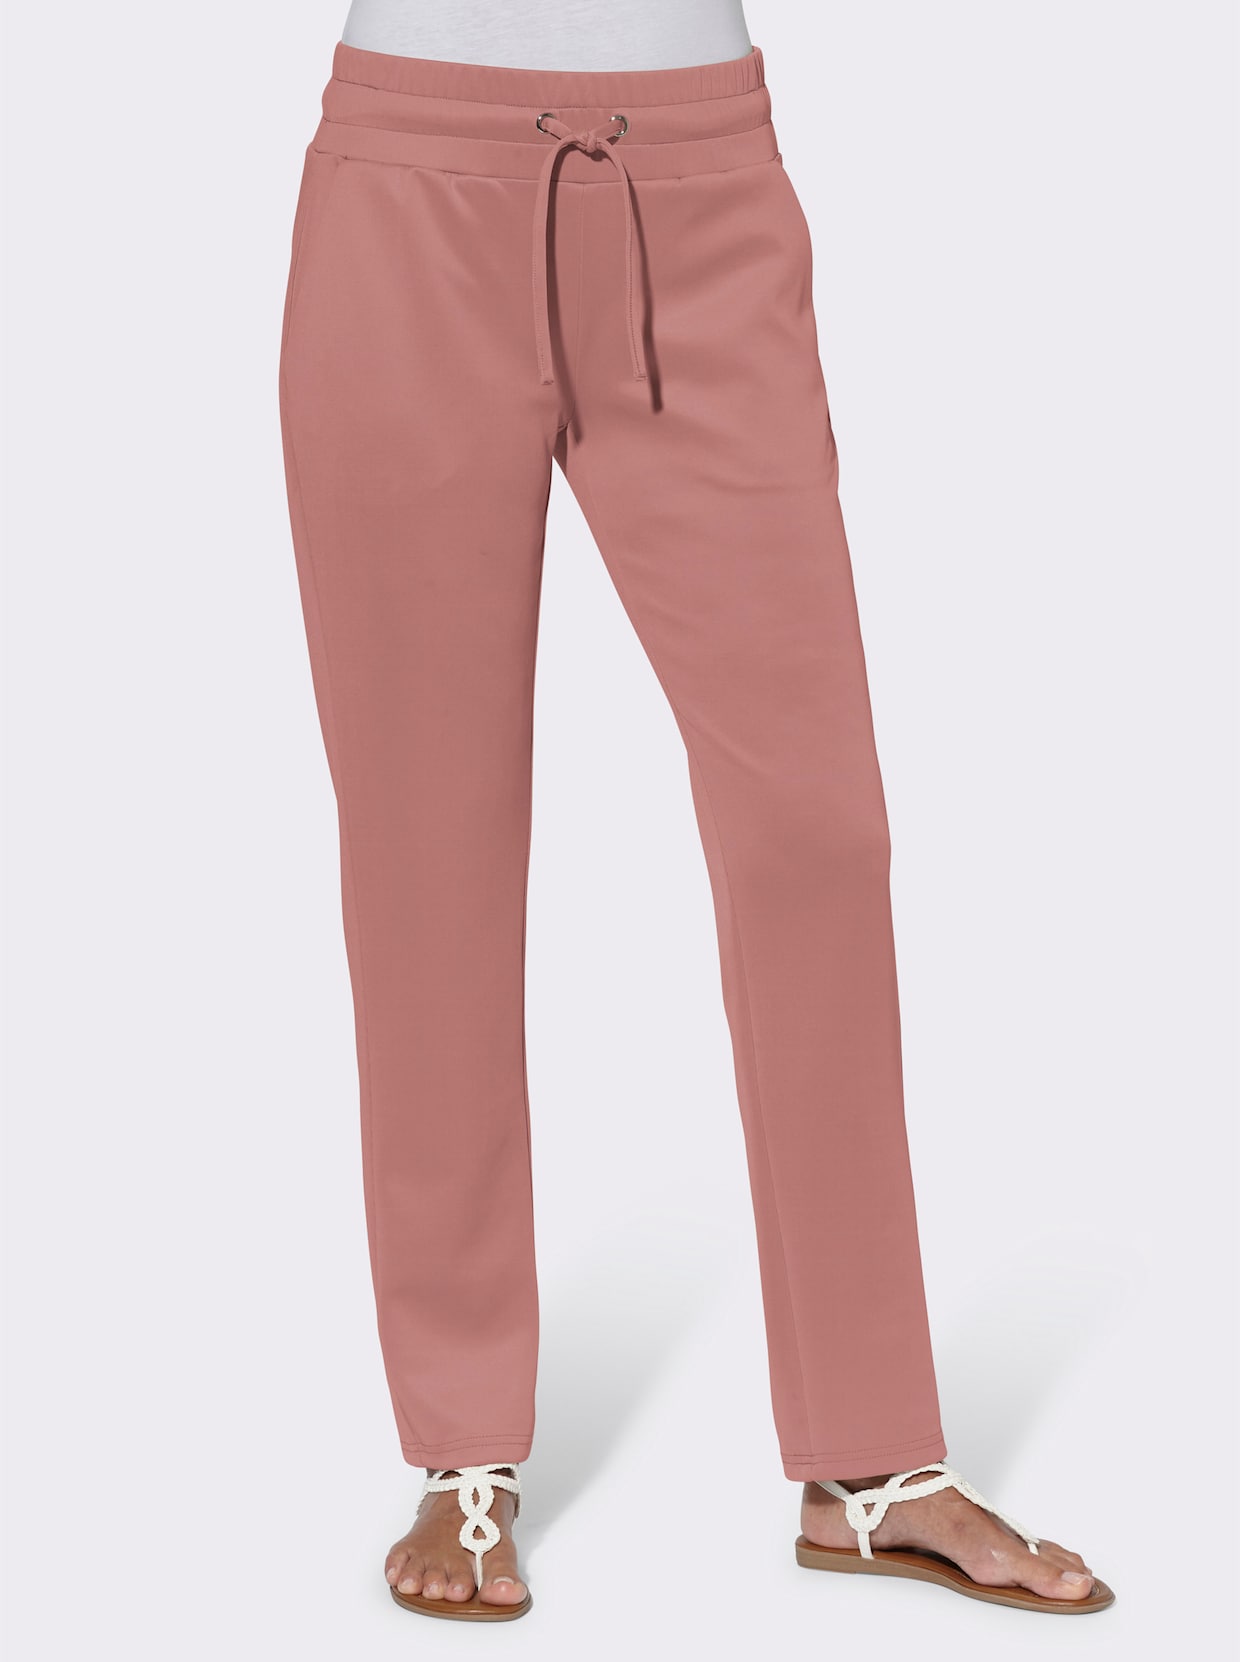 Nohavice na gumu - ružové drevo